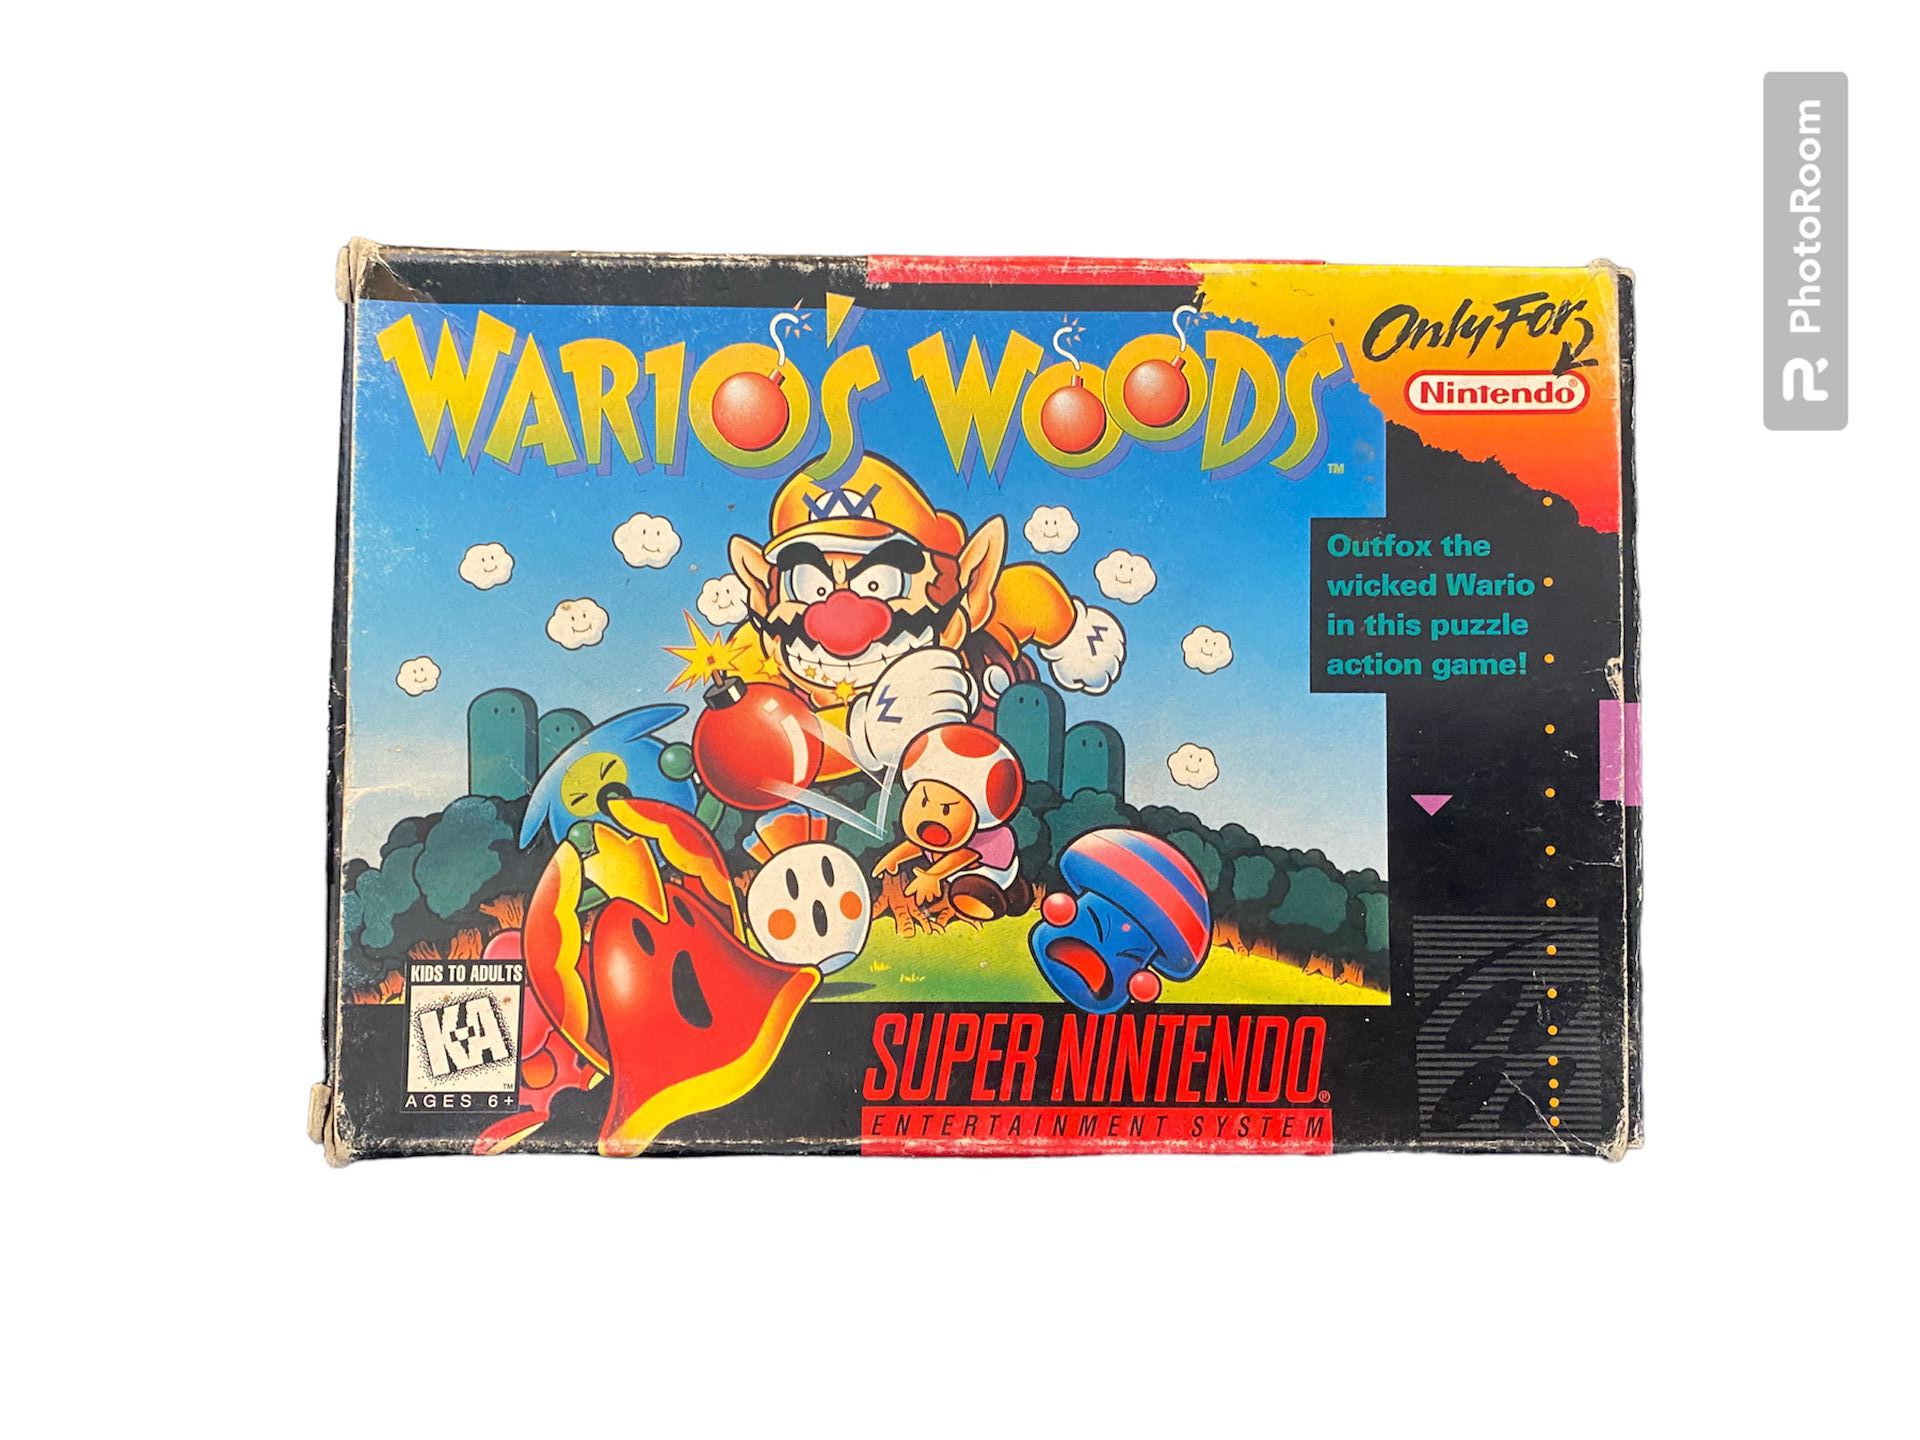 Super Nintendo Warios Wood With Manual SNES 